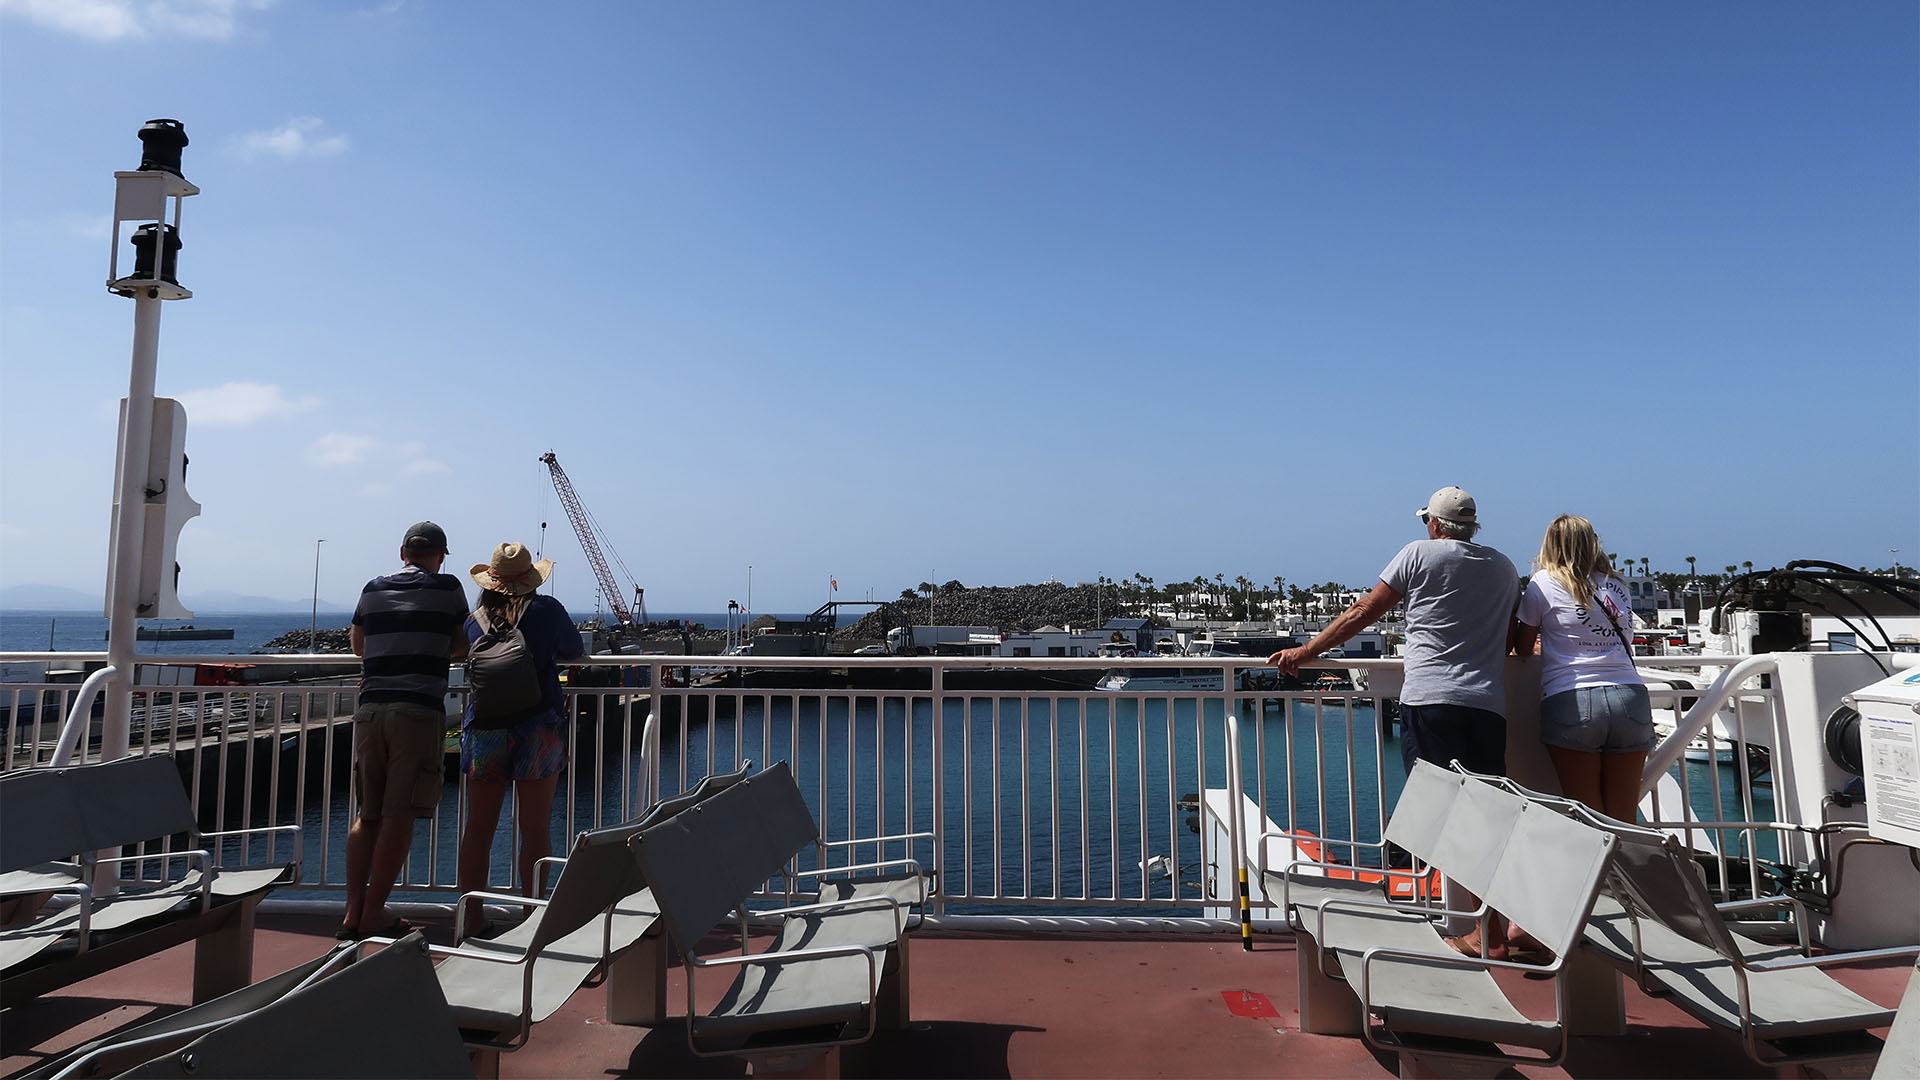 Reisen auf dem Bocayna Express von Fred. Olsen zwischen Fuerteventura und Lanzarote.